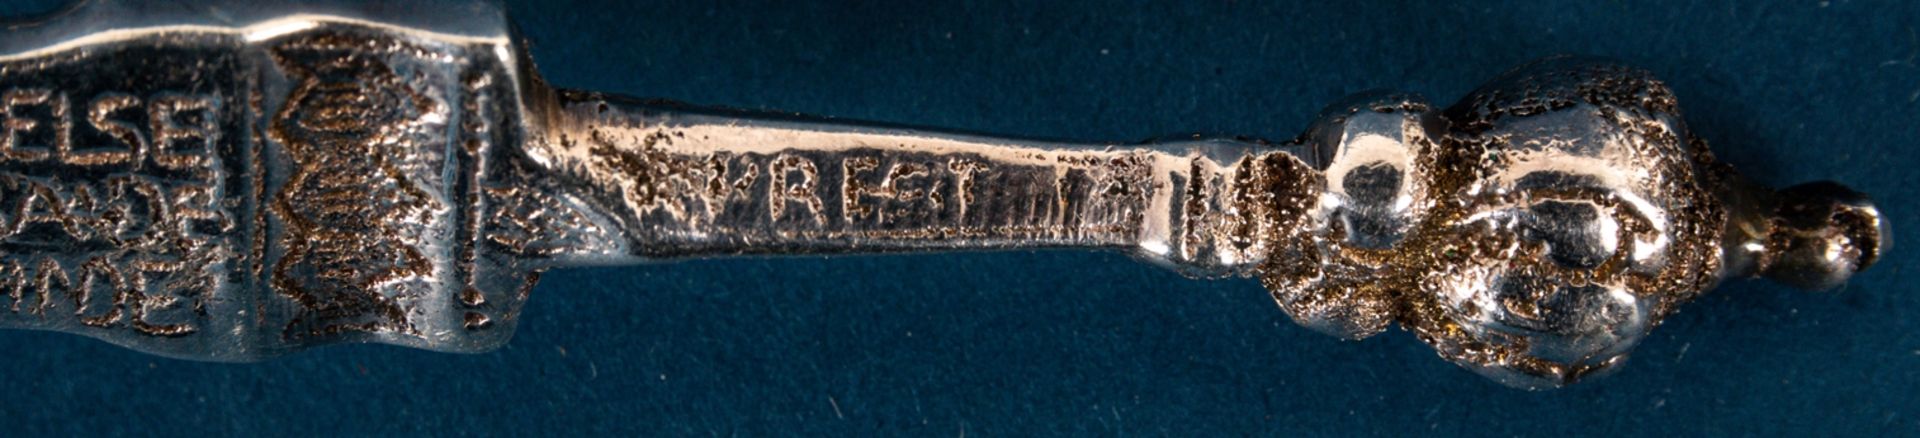 14teiliges Konvolut versch. Besteckteile, größtenteils Silber, zusammen ca. 270 - Image 7 of 8